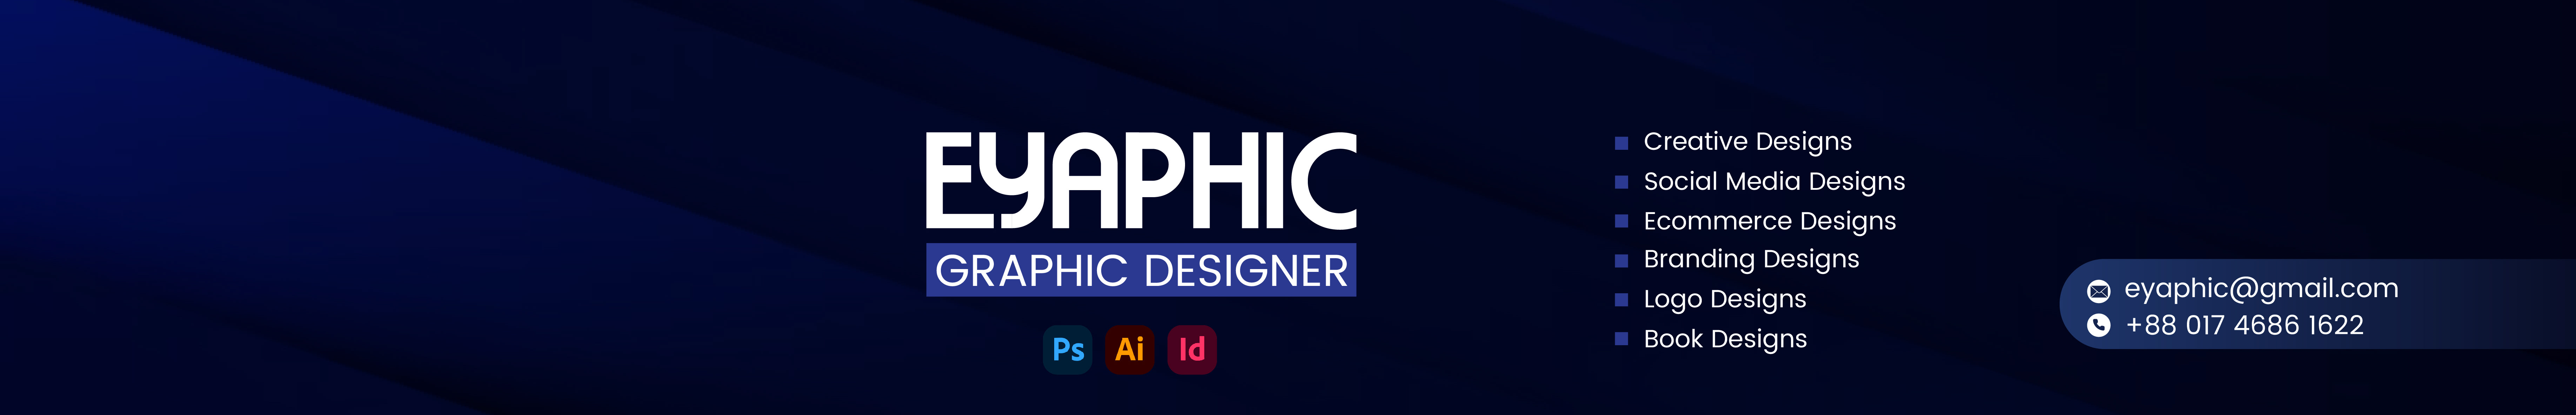 Baner profilu użytkownika Eyaphic (Graphic Designer)